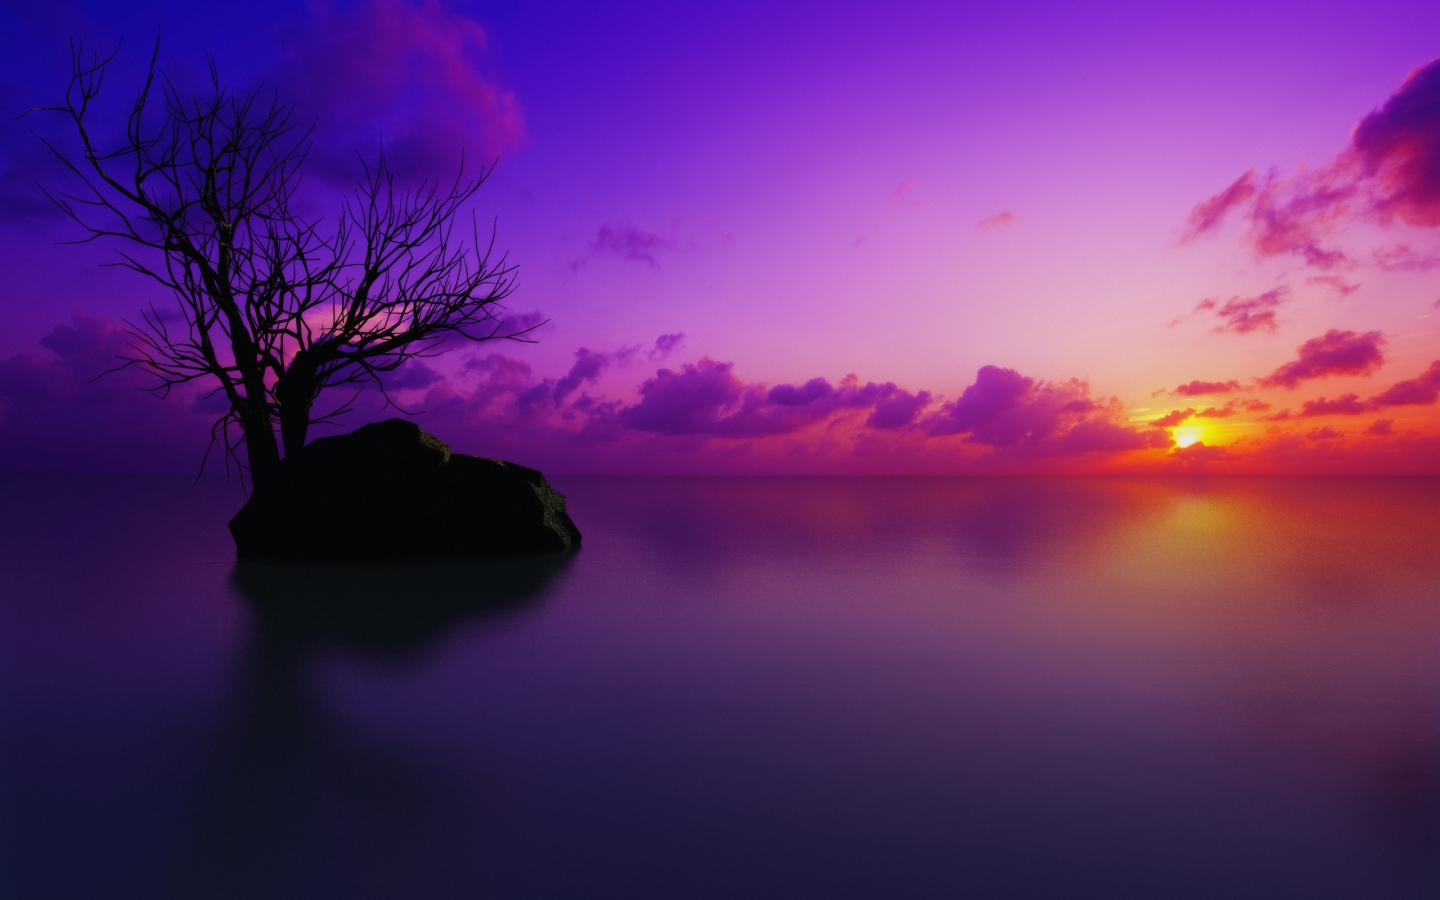 Maldivian Sunset for 1440 x 900 widescreen resolution